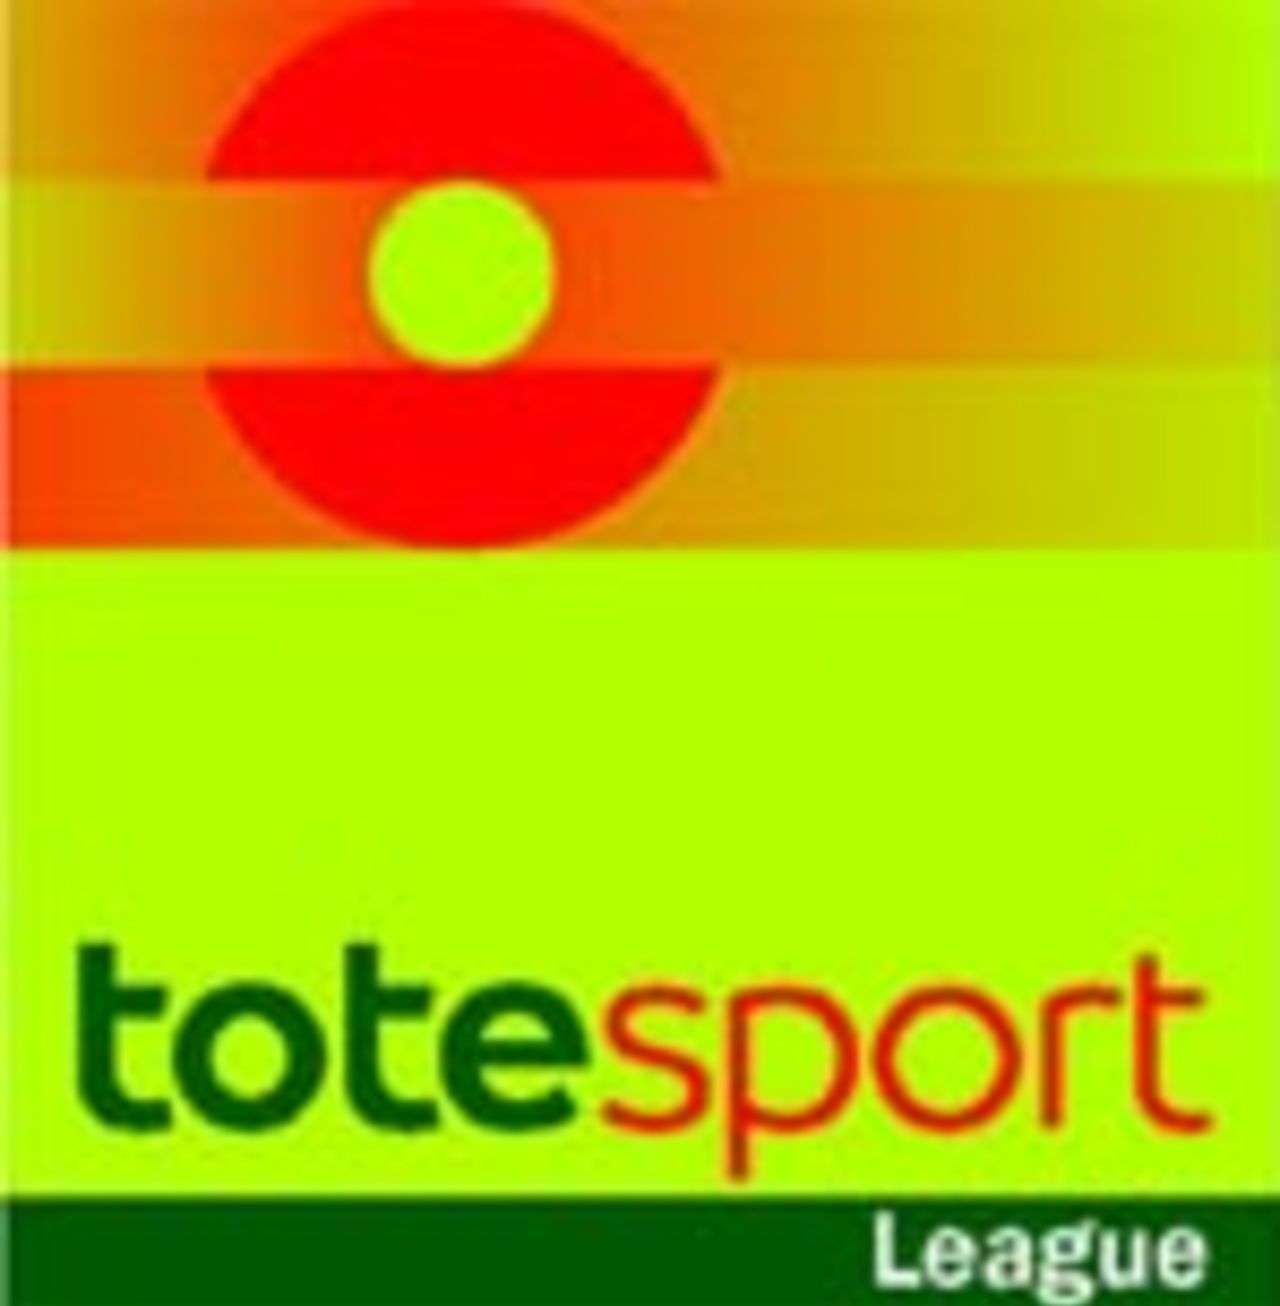 totesport League logo